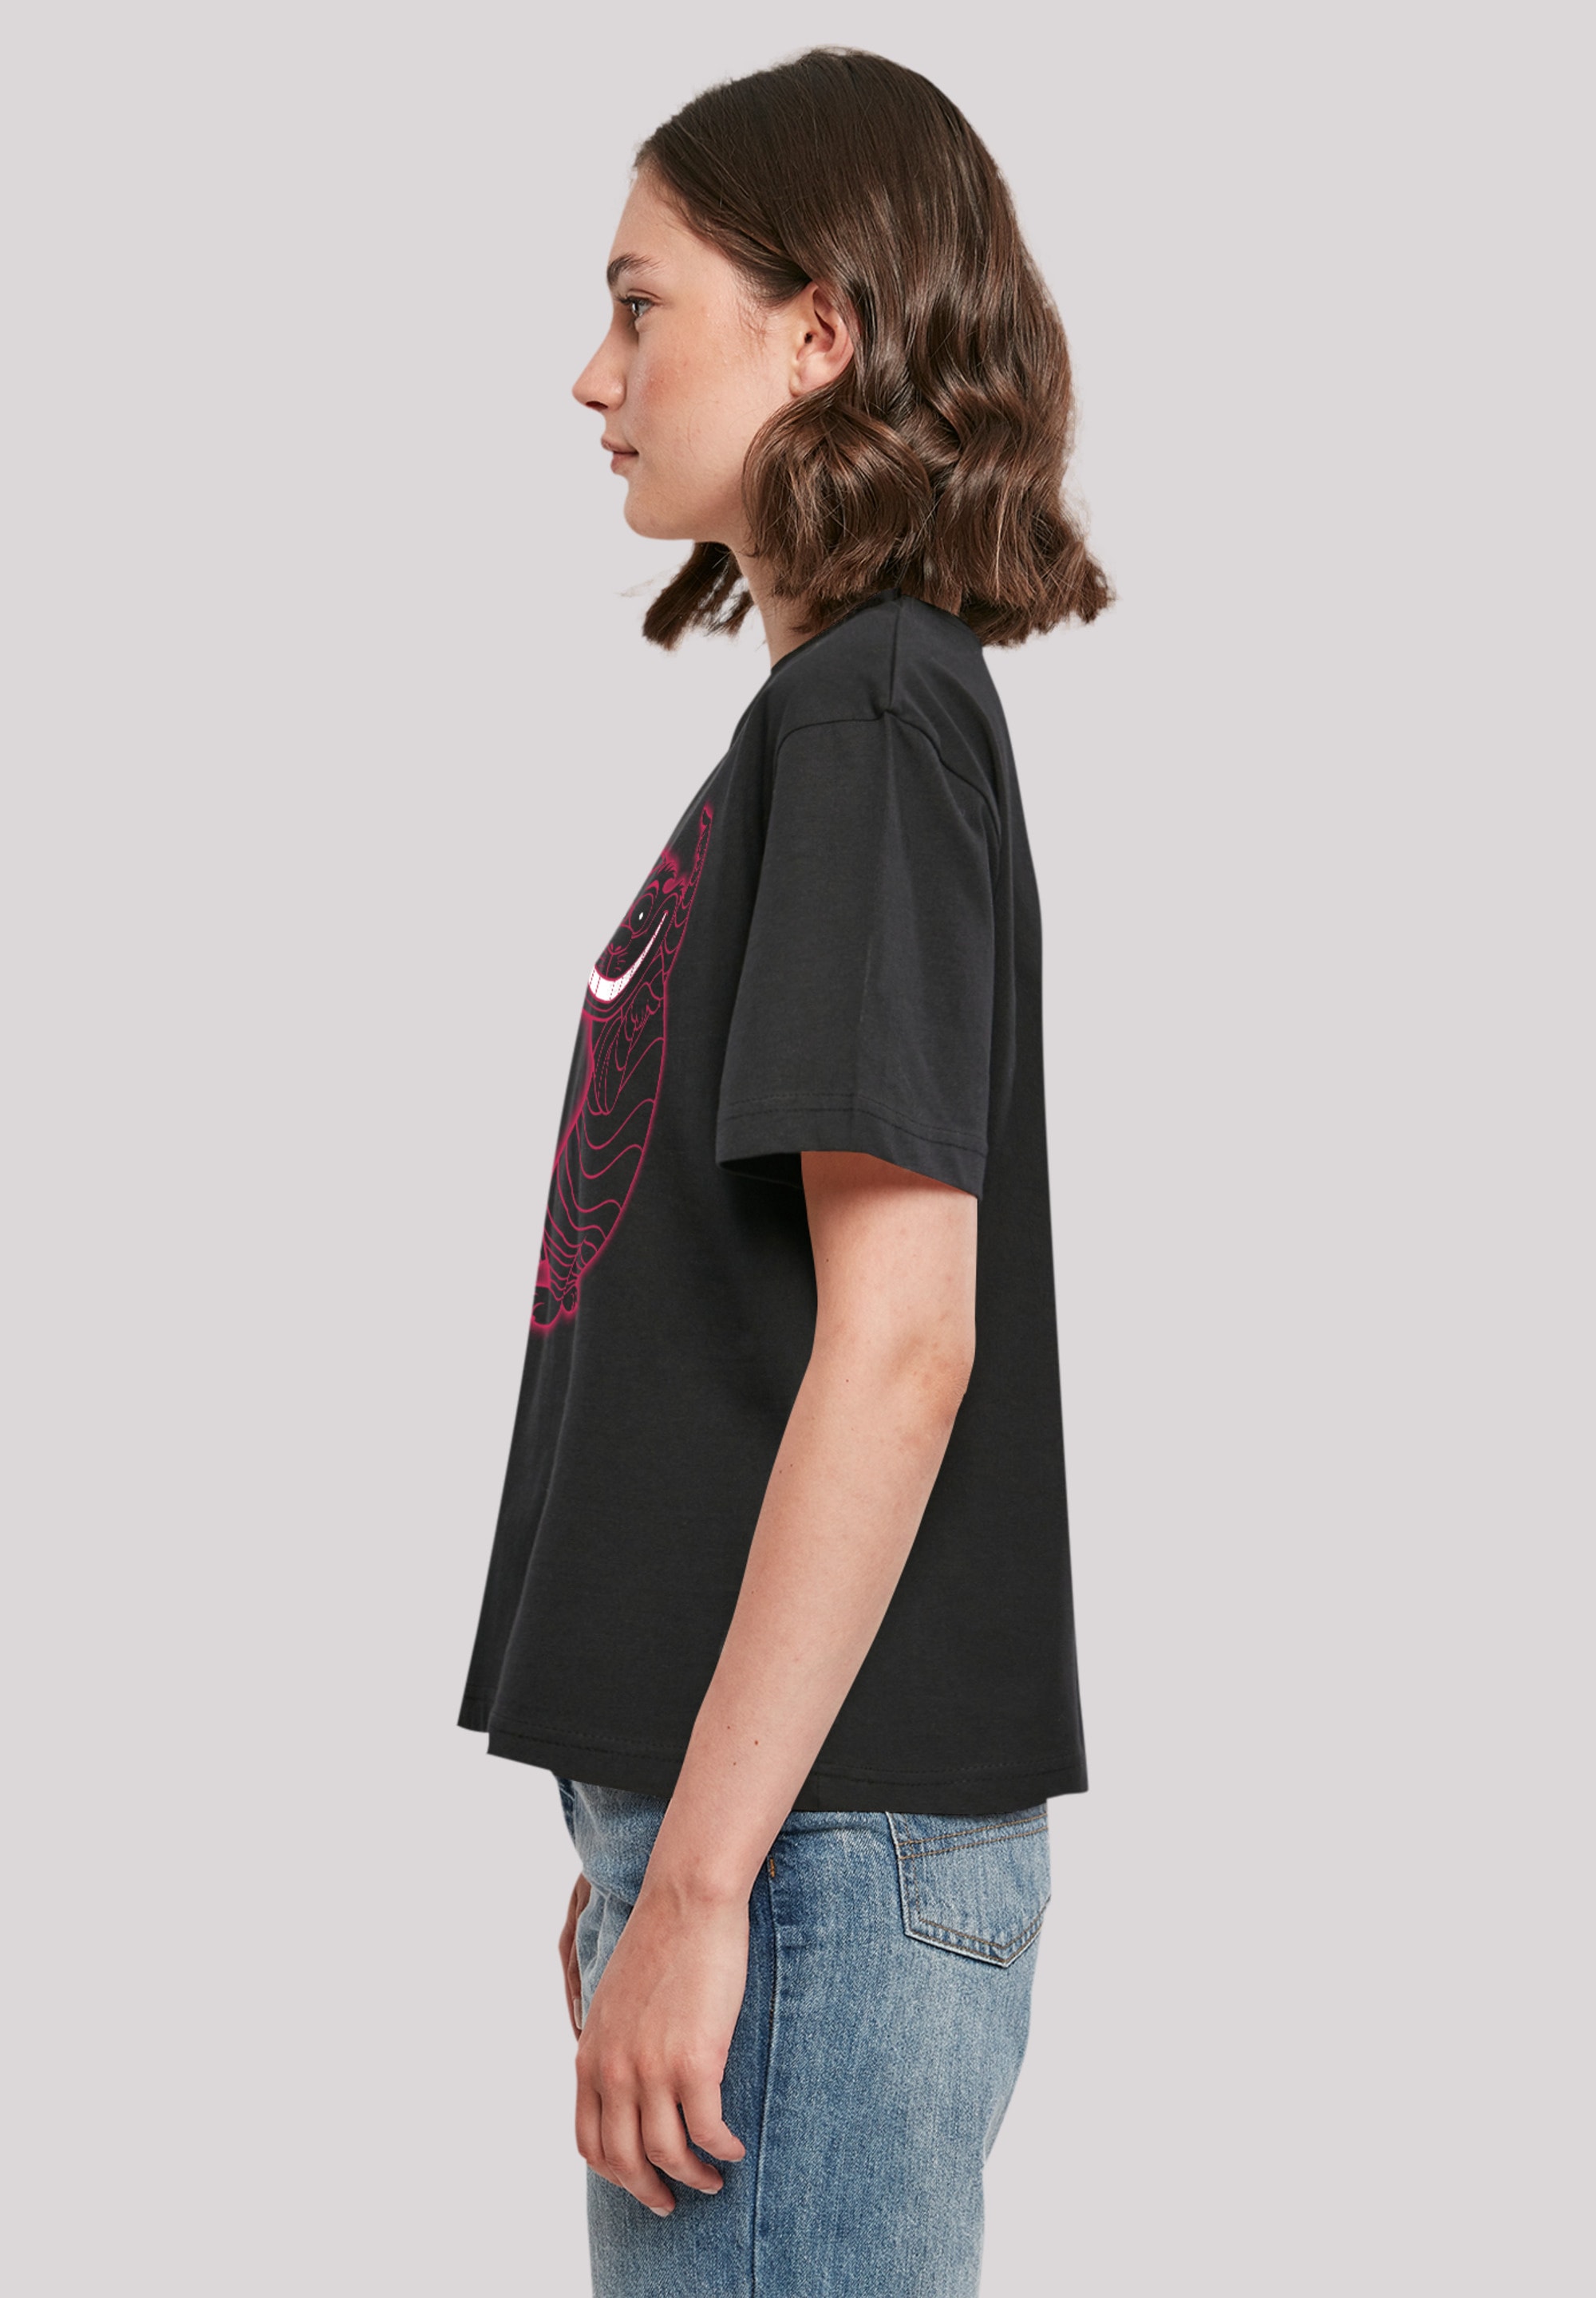 Premium BAUR Alice | T-Shirt »Disney Pinky«, Cat Wunderland Qualität kaufen Cheshire F4NT4STIC im für